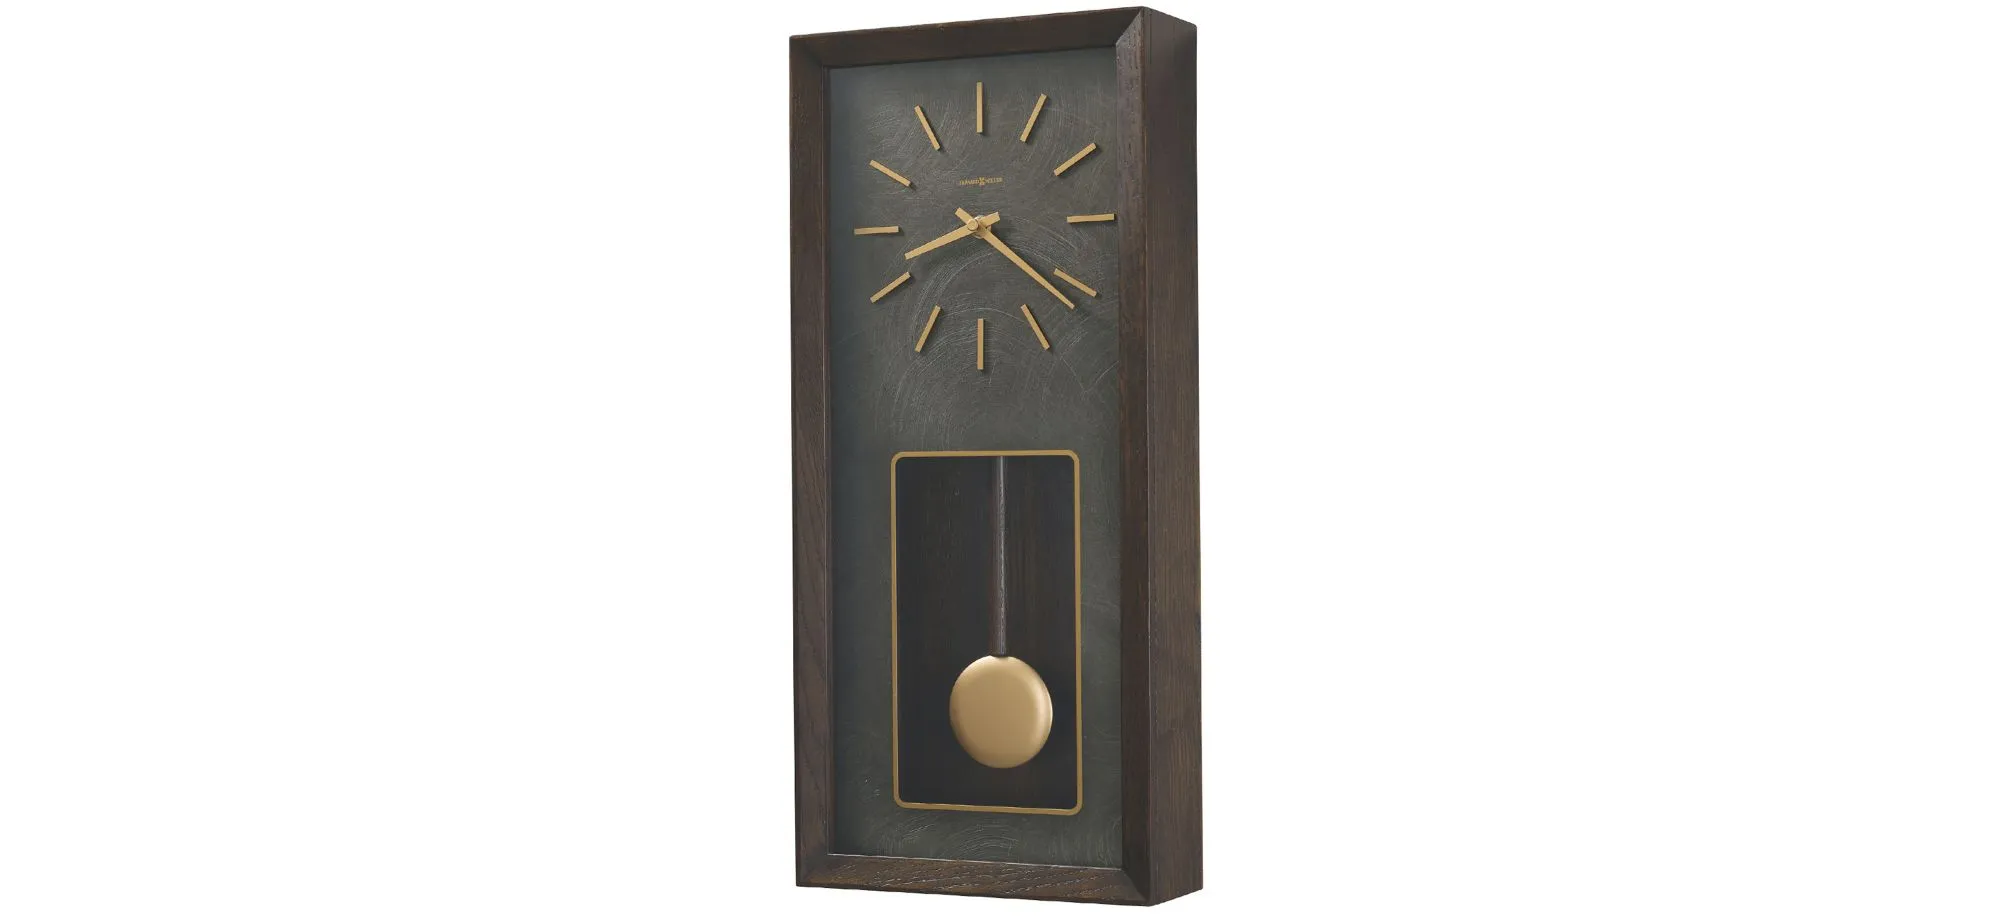 Tegan Wall Clock in Brown by Howard Miller